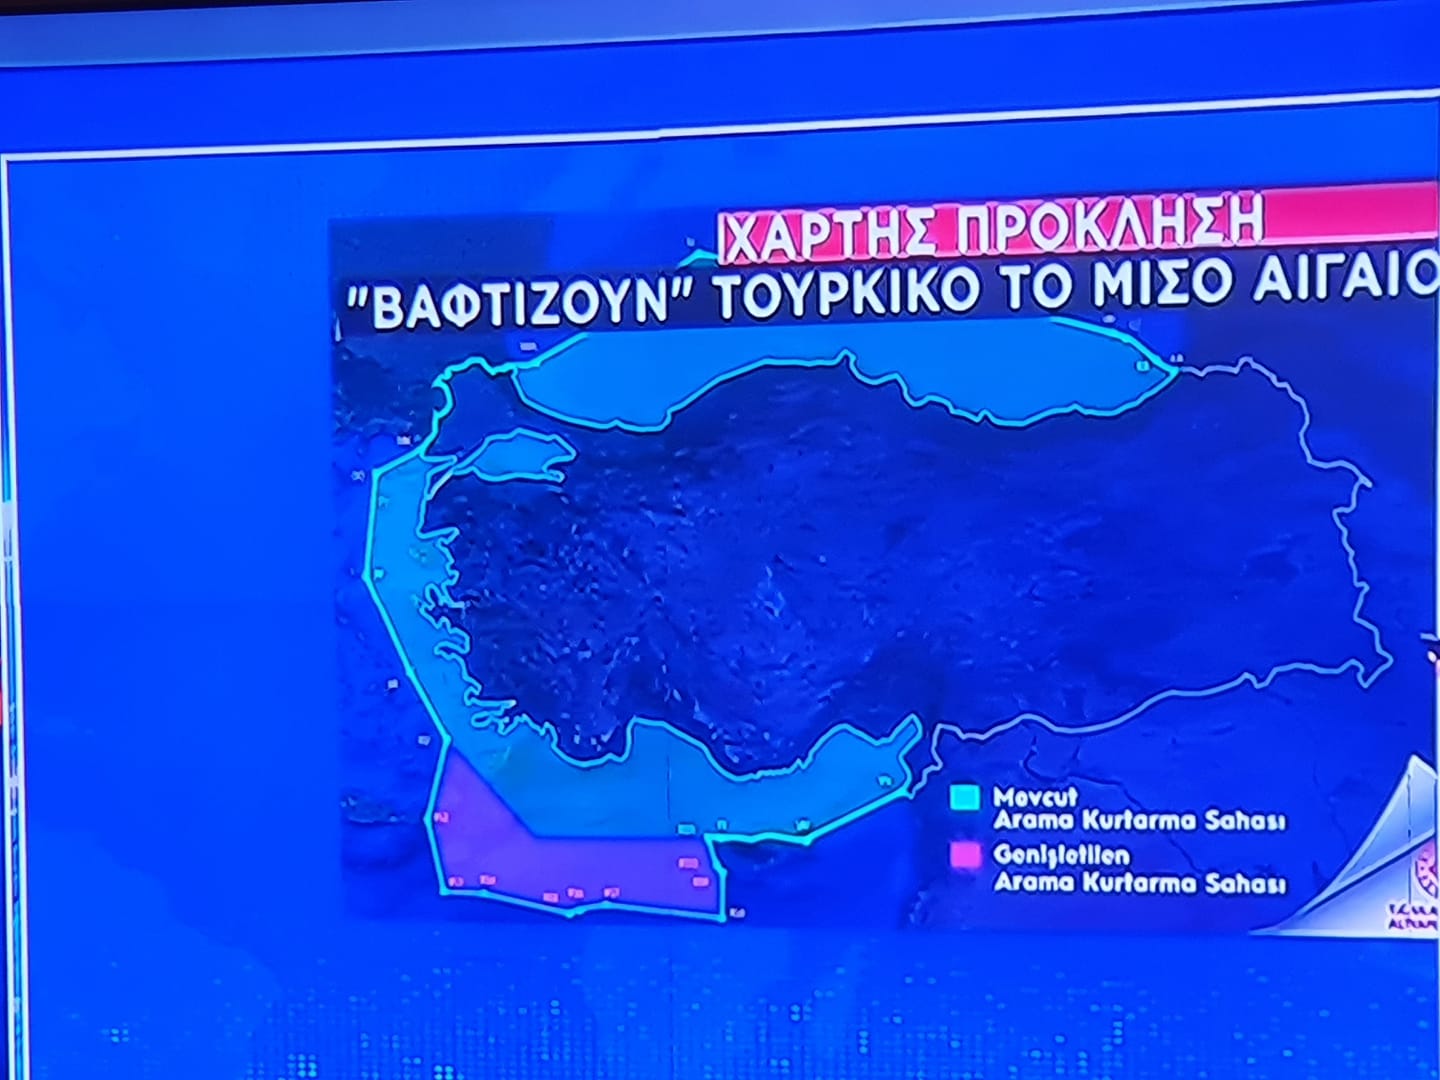 Χάρτης Πρόκληση – Βαφτίζουν “Τουρκικό” Το Μισό Αιγαίο! Η Γερμανία Δικαιολογεί τον κατάπτυστο Τουρκικό χάρτη που και μοιράζει Αιγαίο!